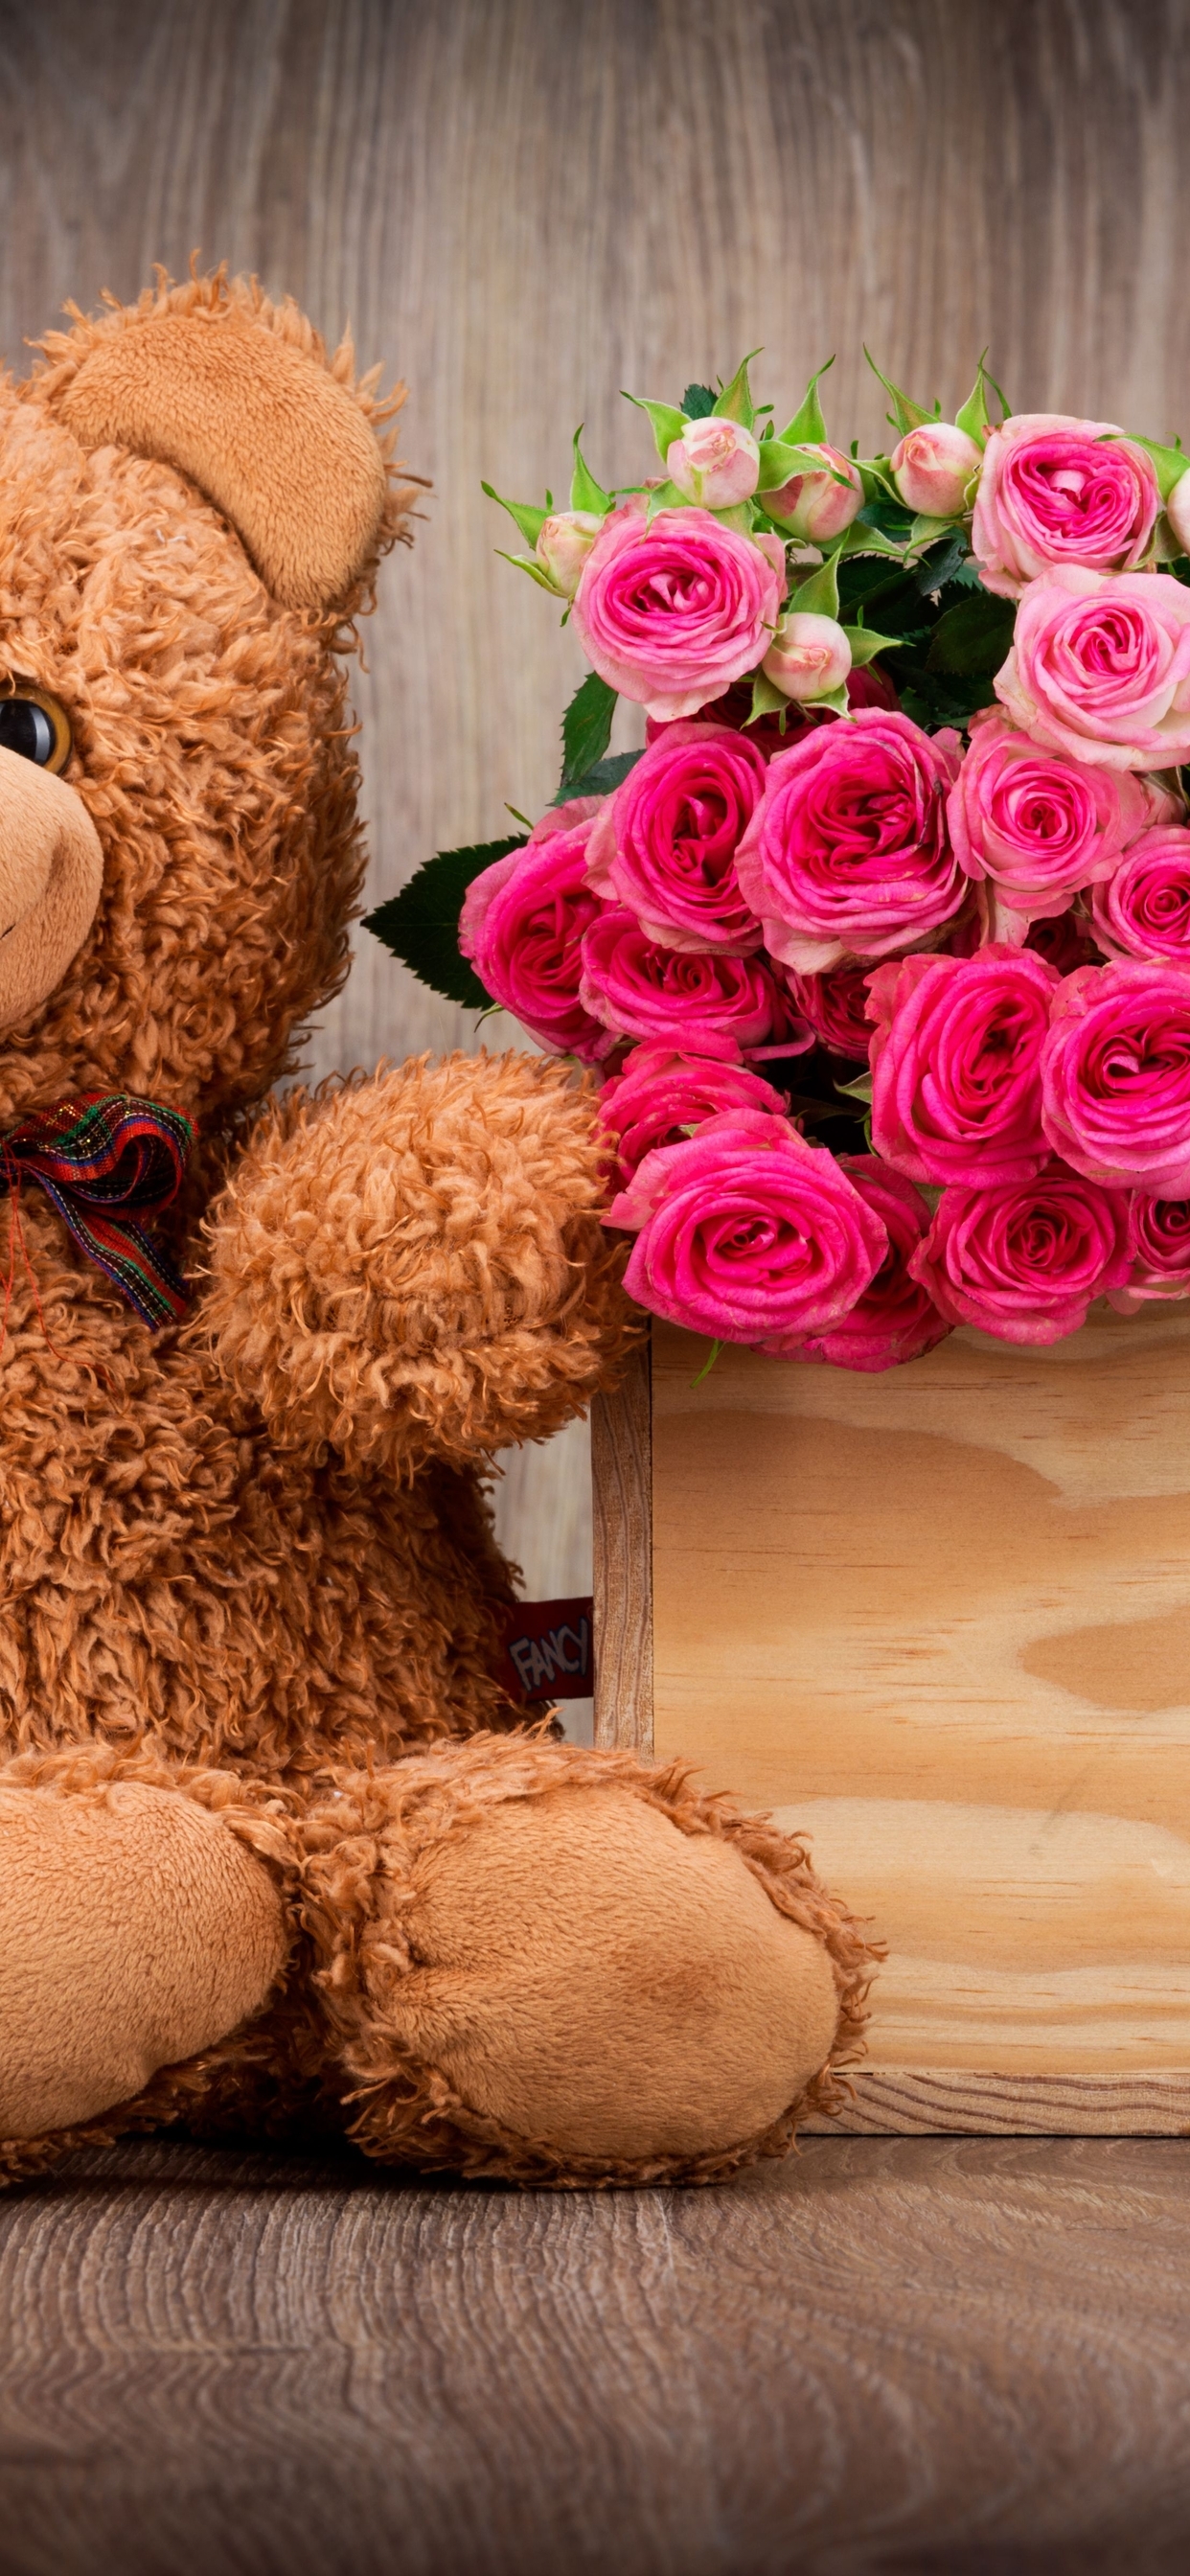 Картинка: Медвежонок, плюшевый, бантик, глаза, игрушка, цветы, розы, букет, коробка, день рождения, праздник, настроение